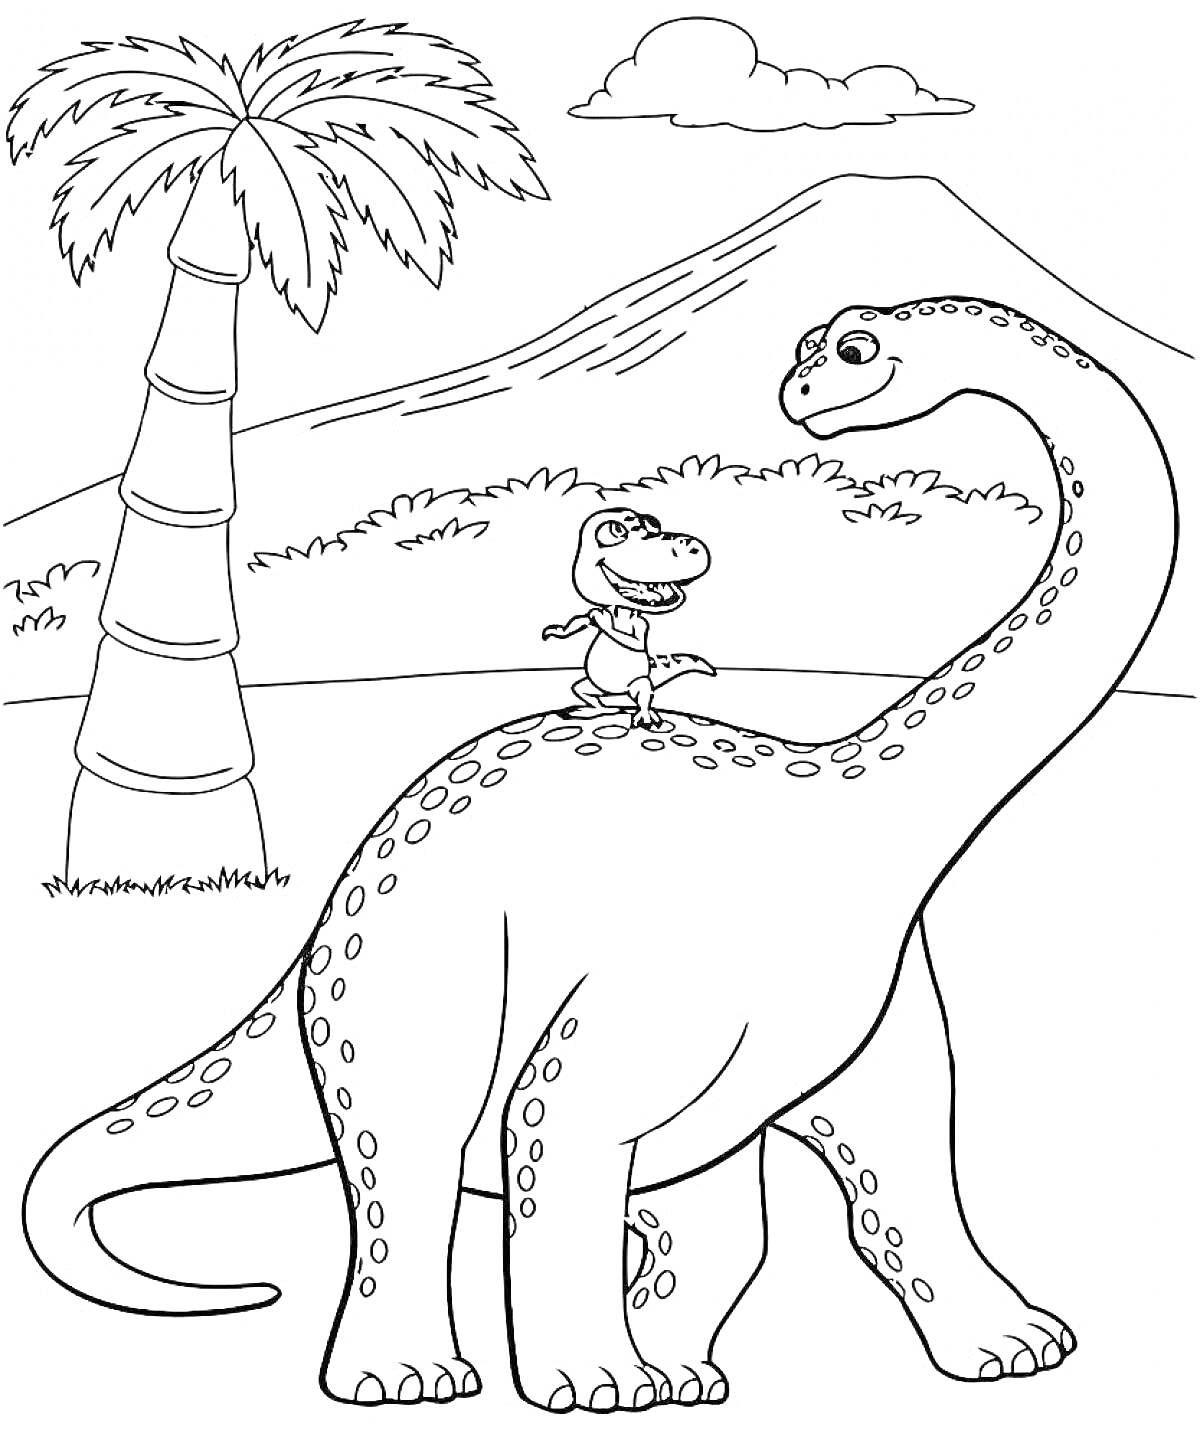 Большой динозавр с малышом на спине, пальма и гора на заднем плане